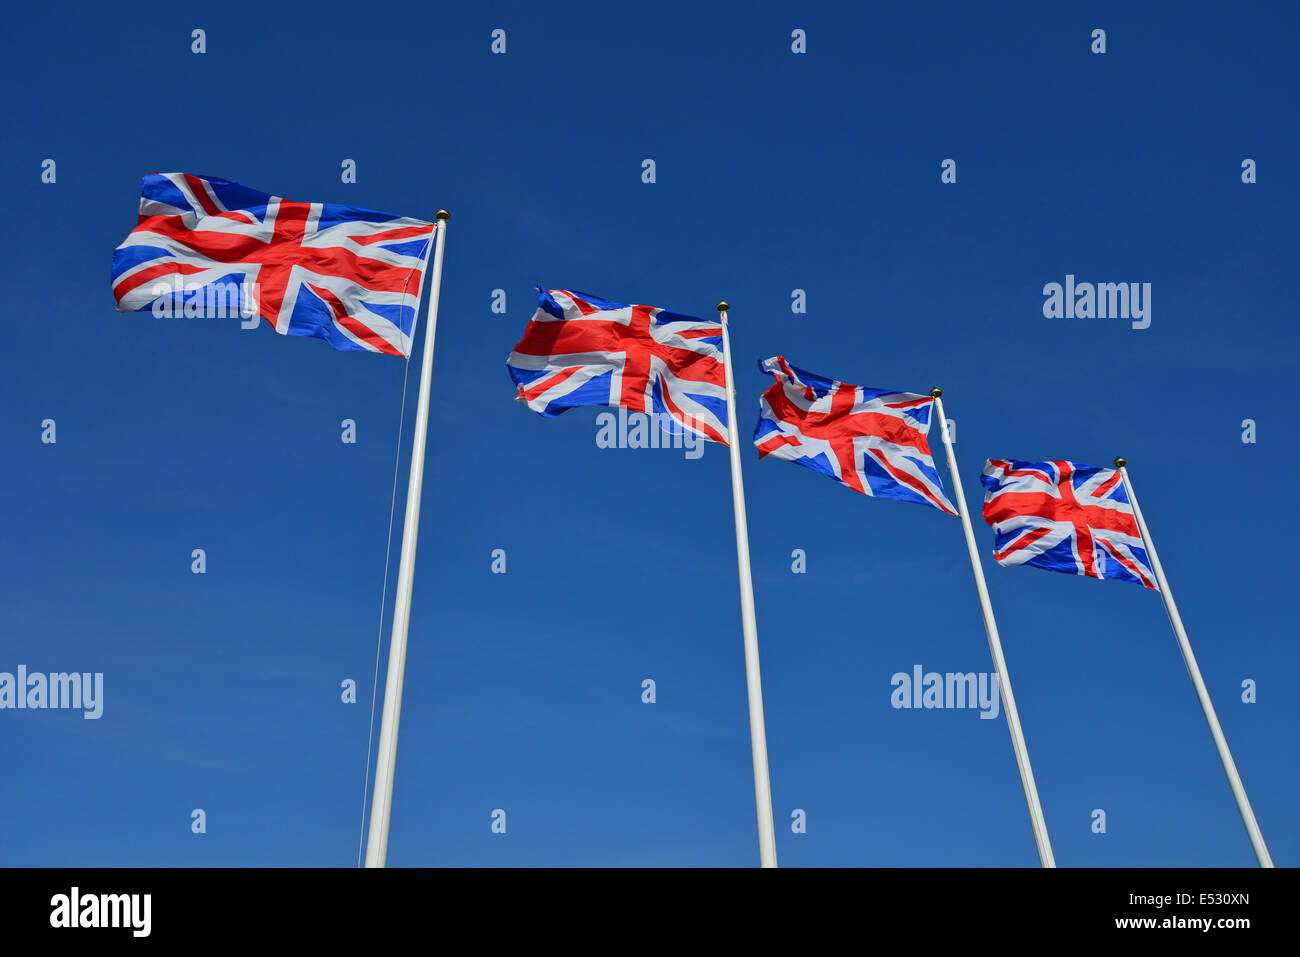 Zeile des Union Jack-Flaggen, Dallas Burton Poloclub, Southam, Warwickshire, England, Vereinigtes Königreich Stockfoto